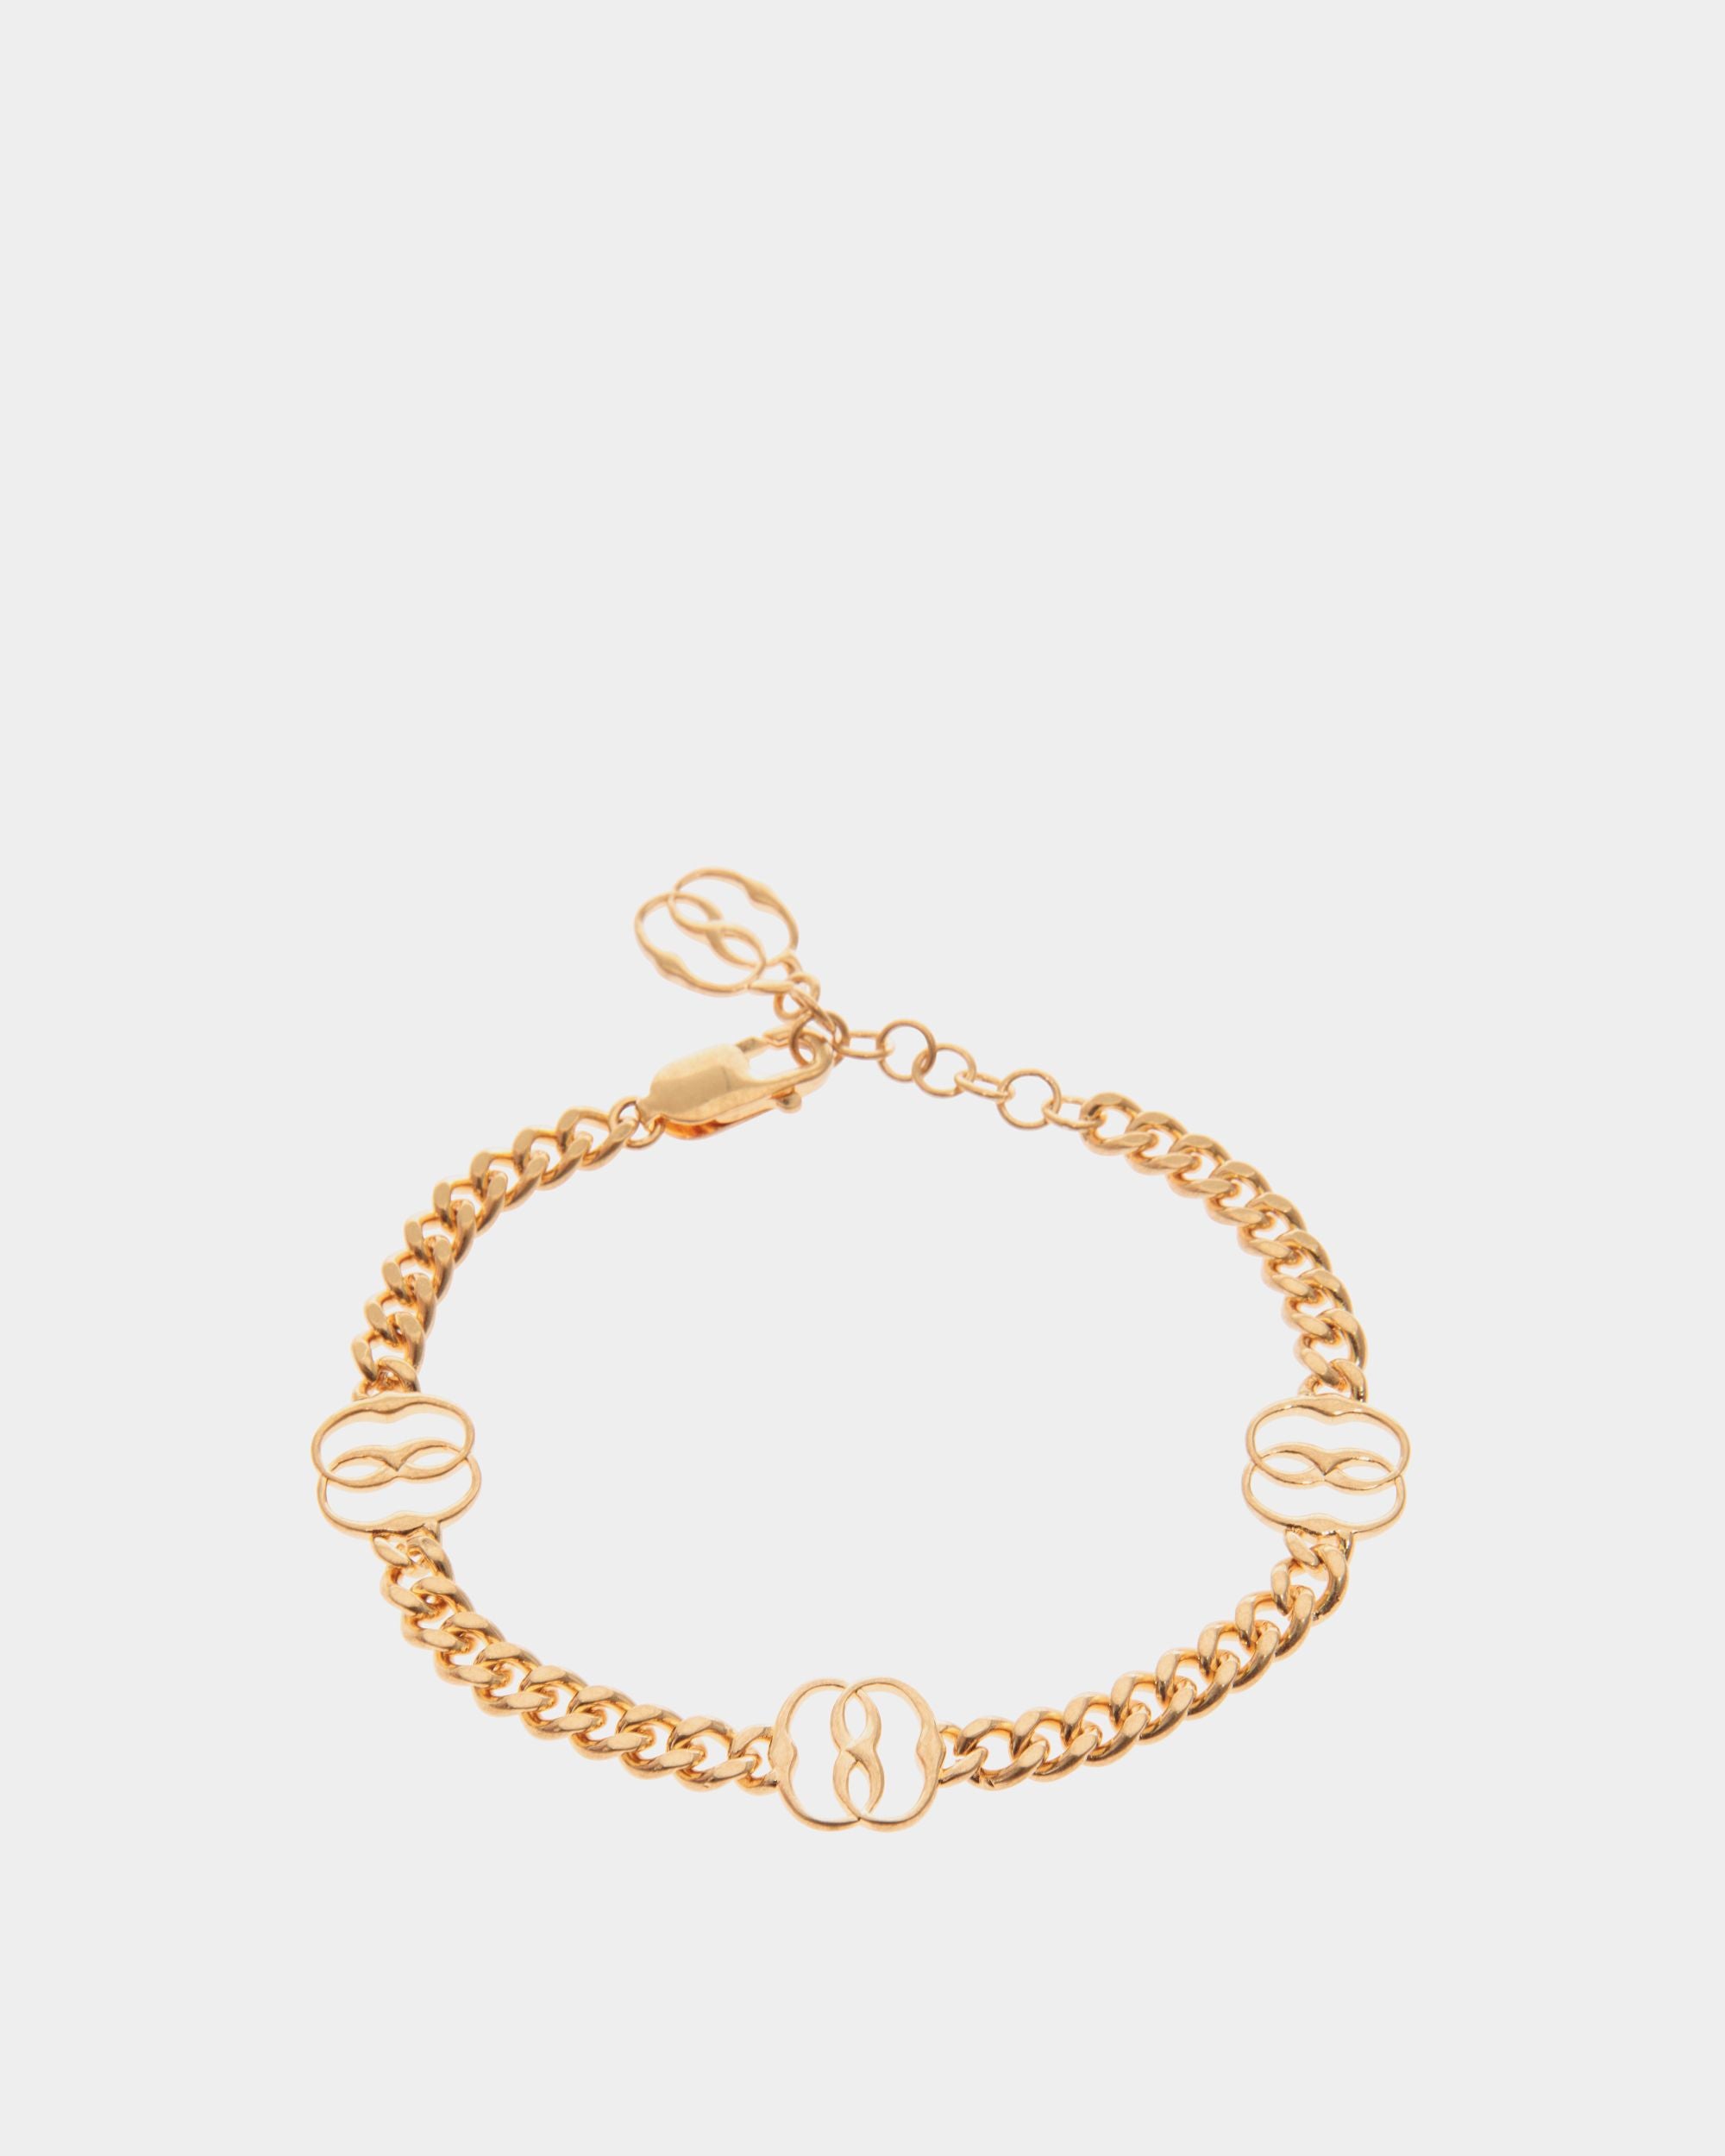 Emblem | Bracelet pour femme en éco-laiton doré | Bally | Still Life Devant